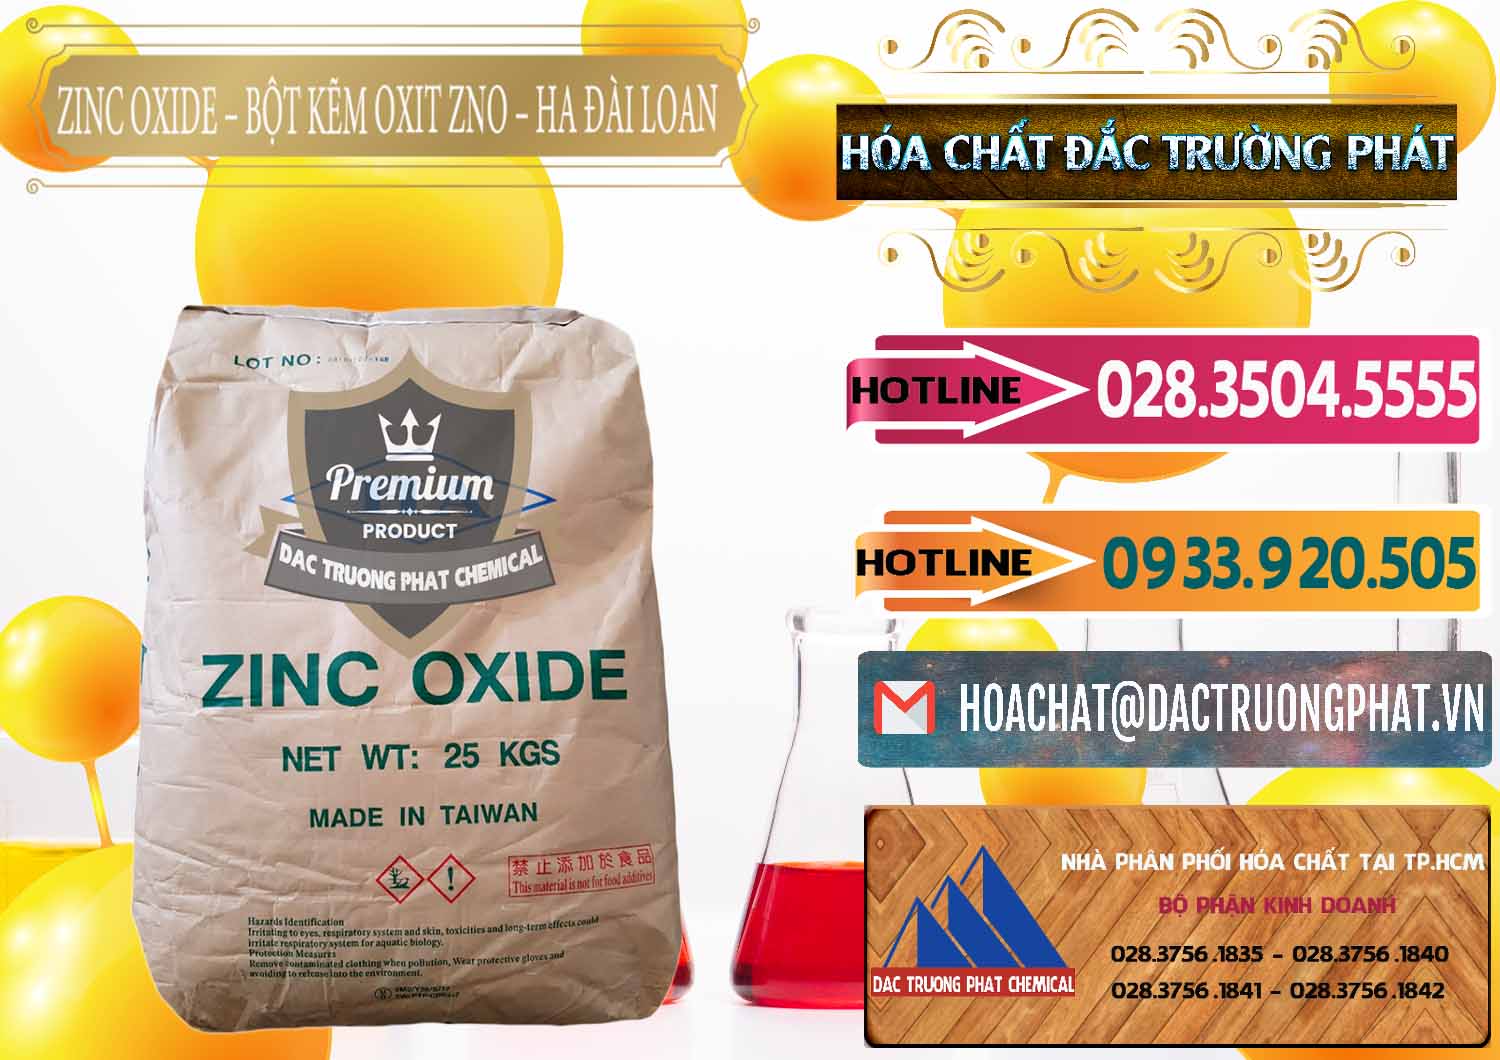 Đơn vị chuyên cung ứng và bán Zinc Oxide - Bột Kẽm Oxit ZNO HA Đài Loan Taiwan - 0180 - Cty chuyên cung ứng & phân phối hóa chất tại TP.HCM - dactruongphat.vn